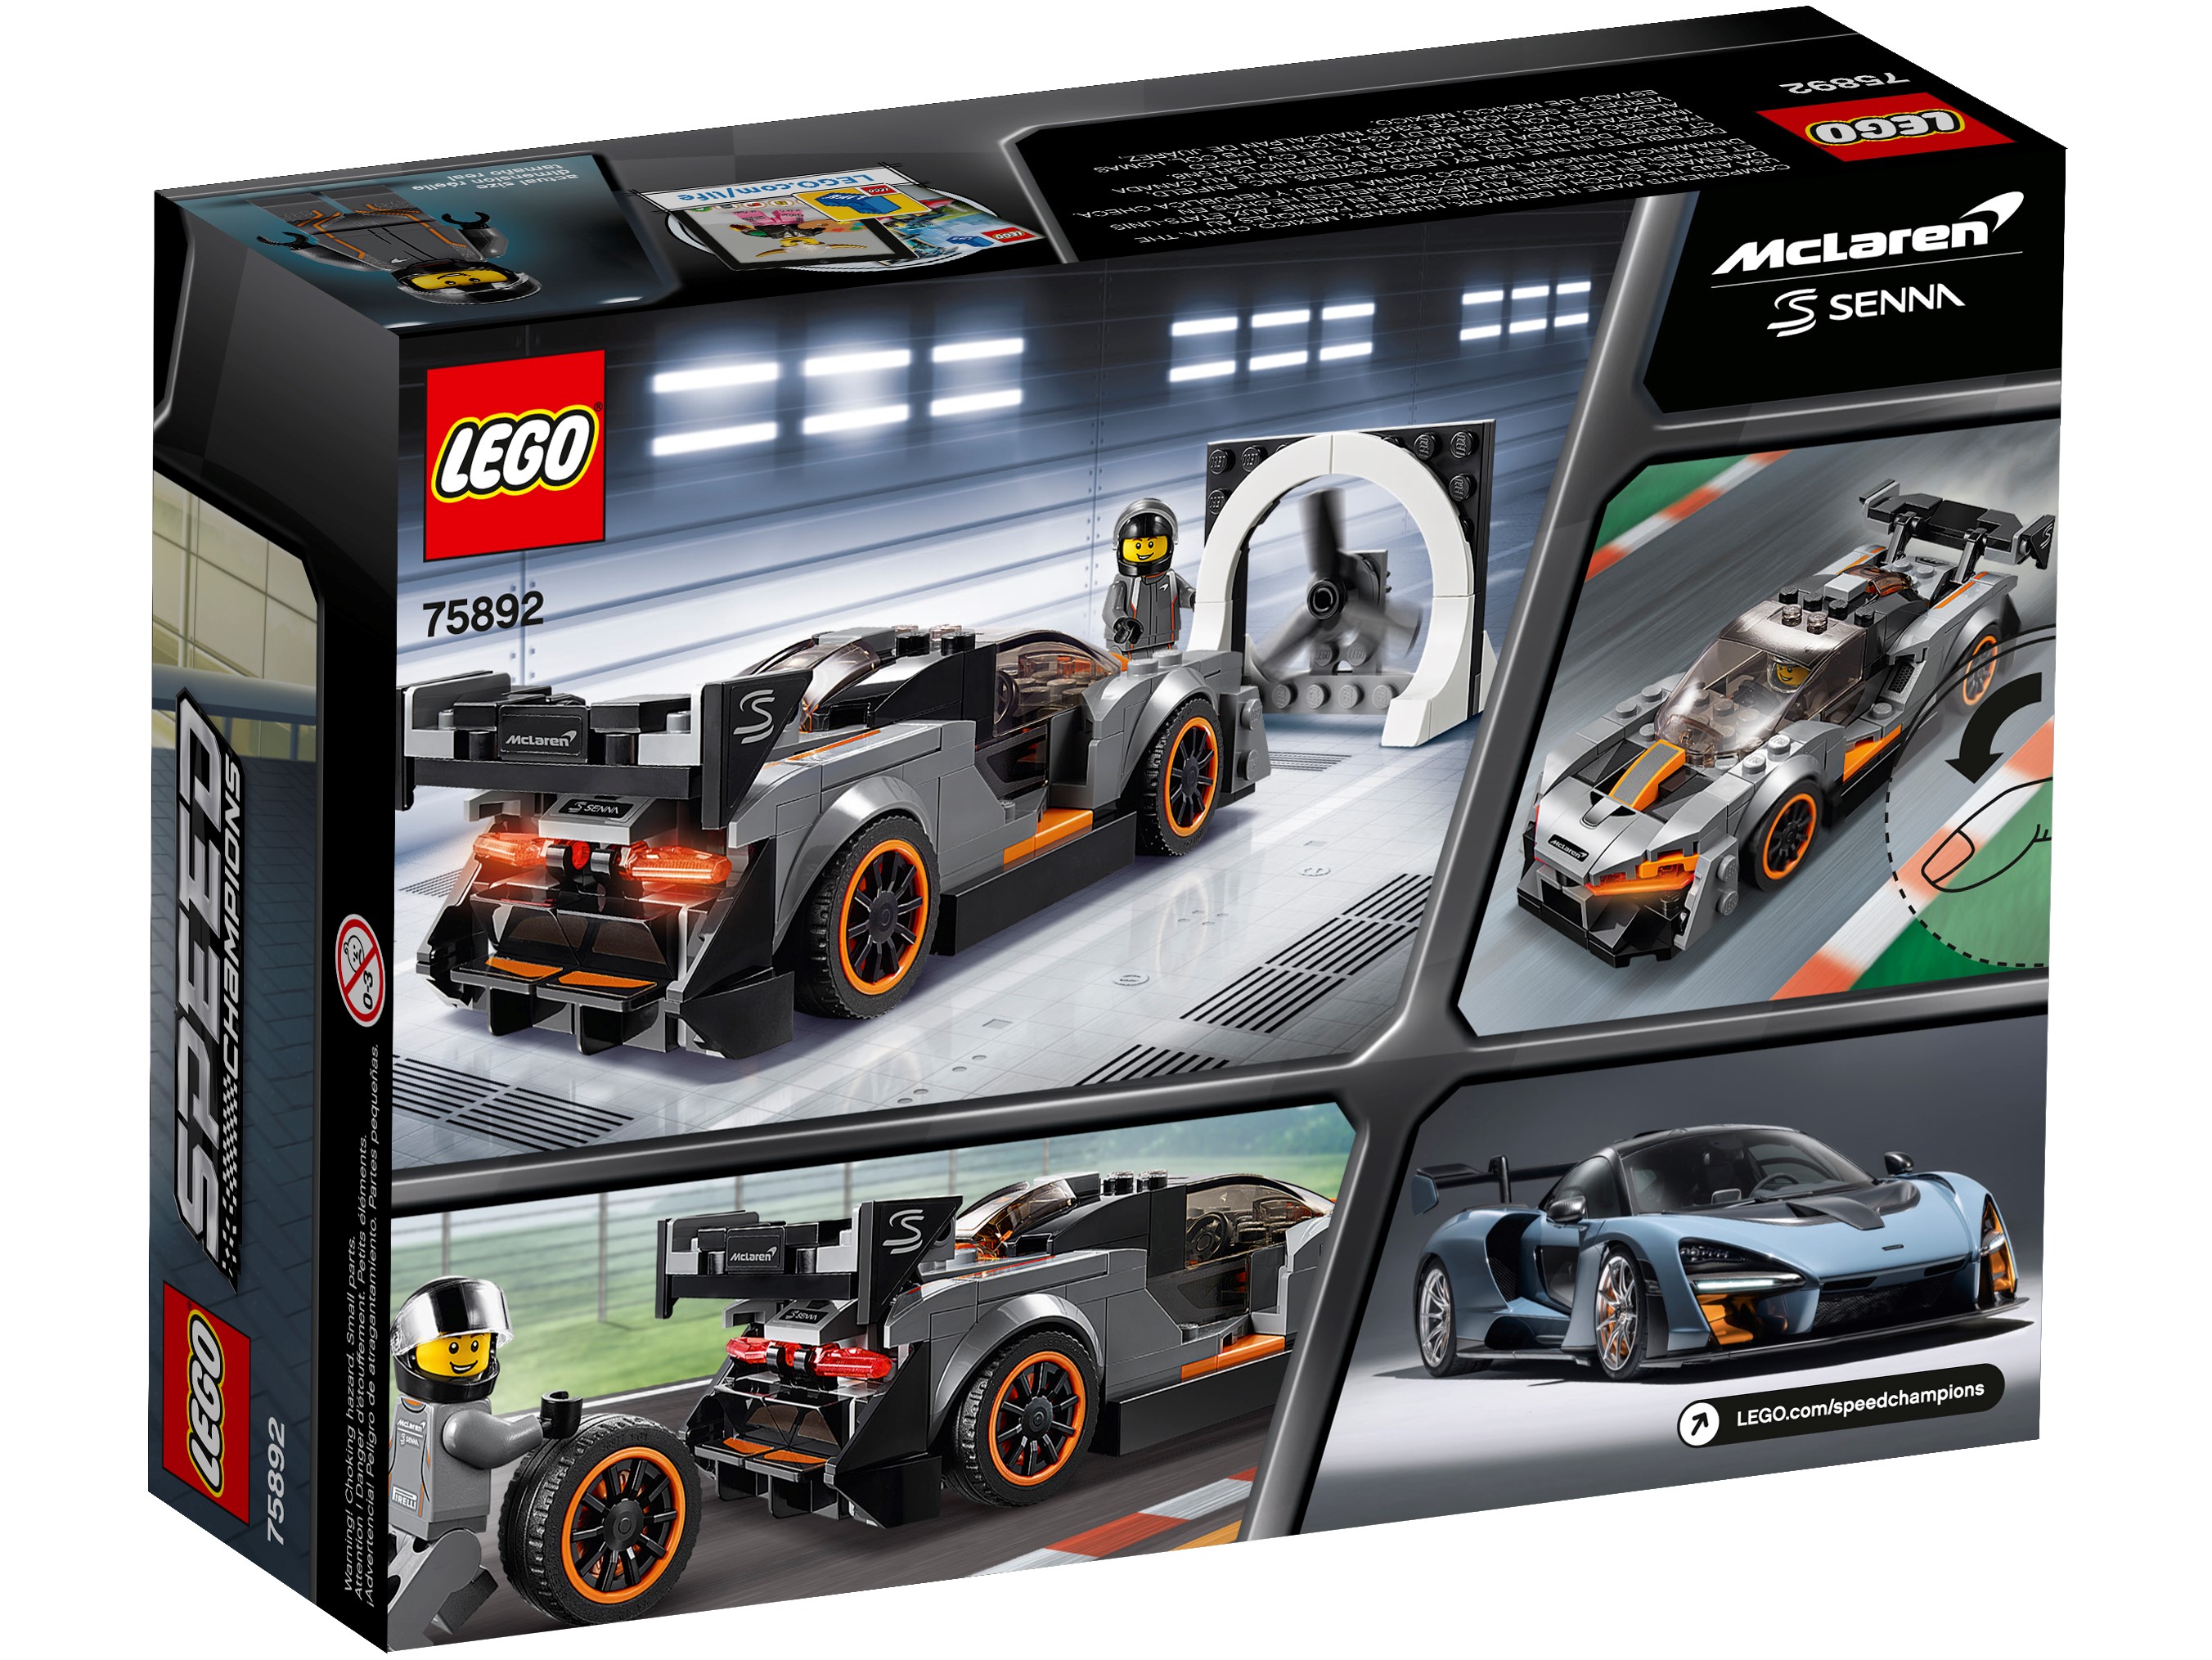 McLaren Senna LEGO LEGO Nuovo di zecca 75892 